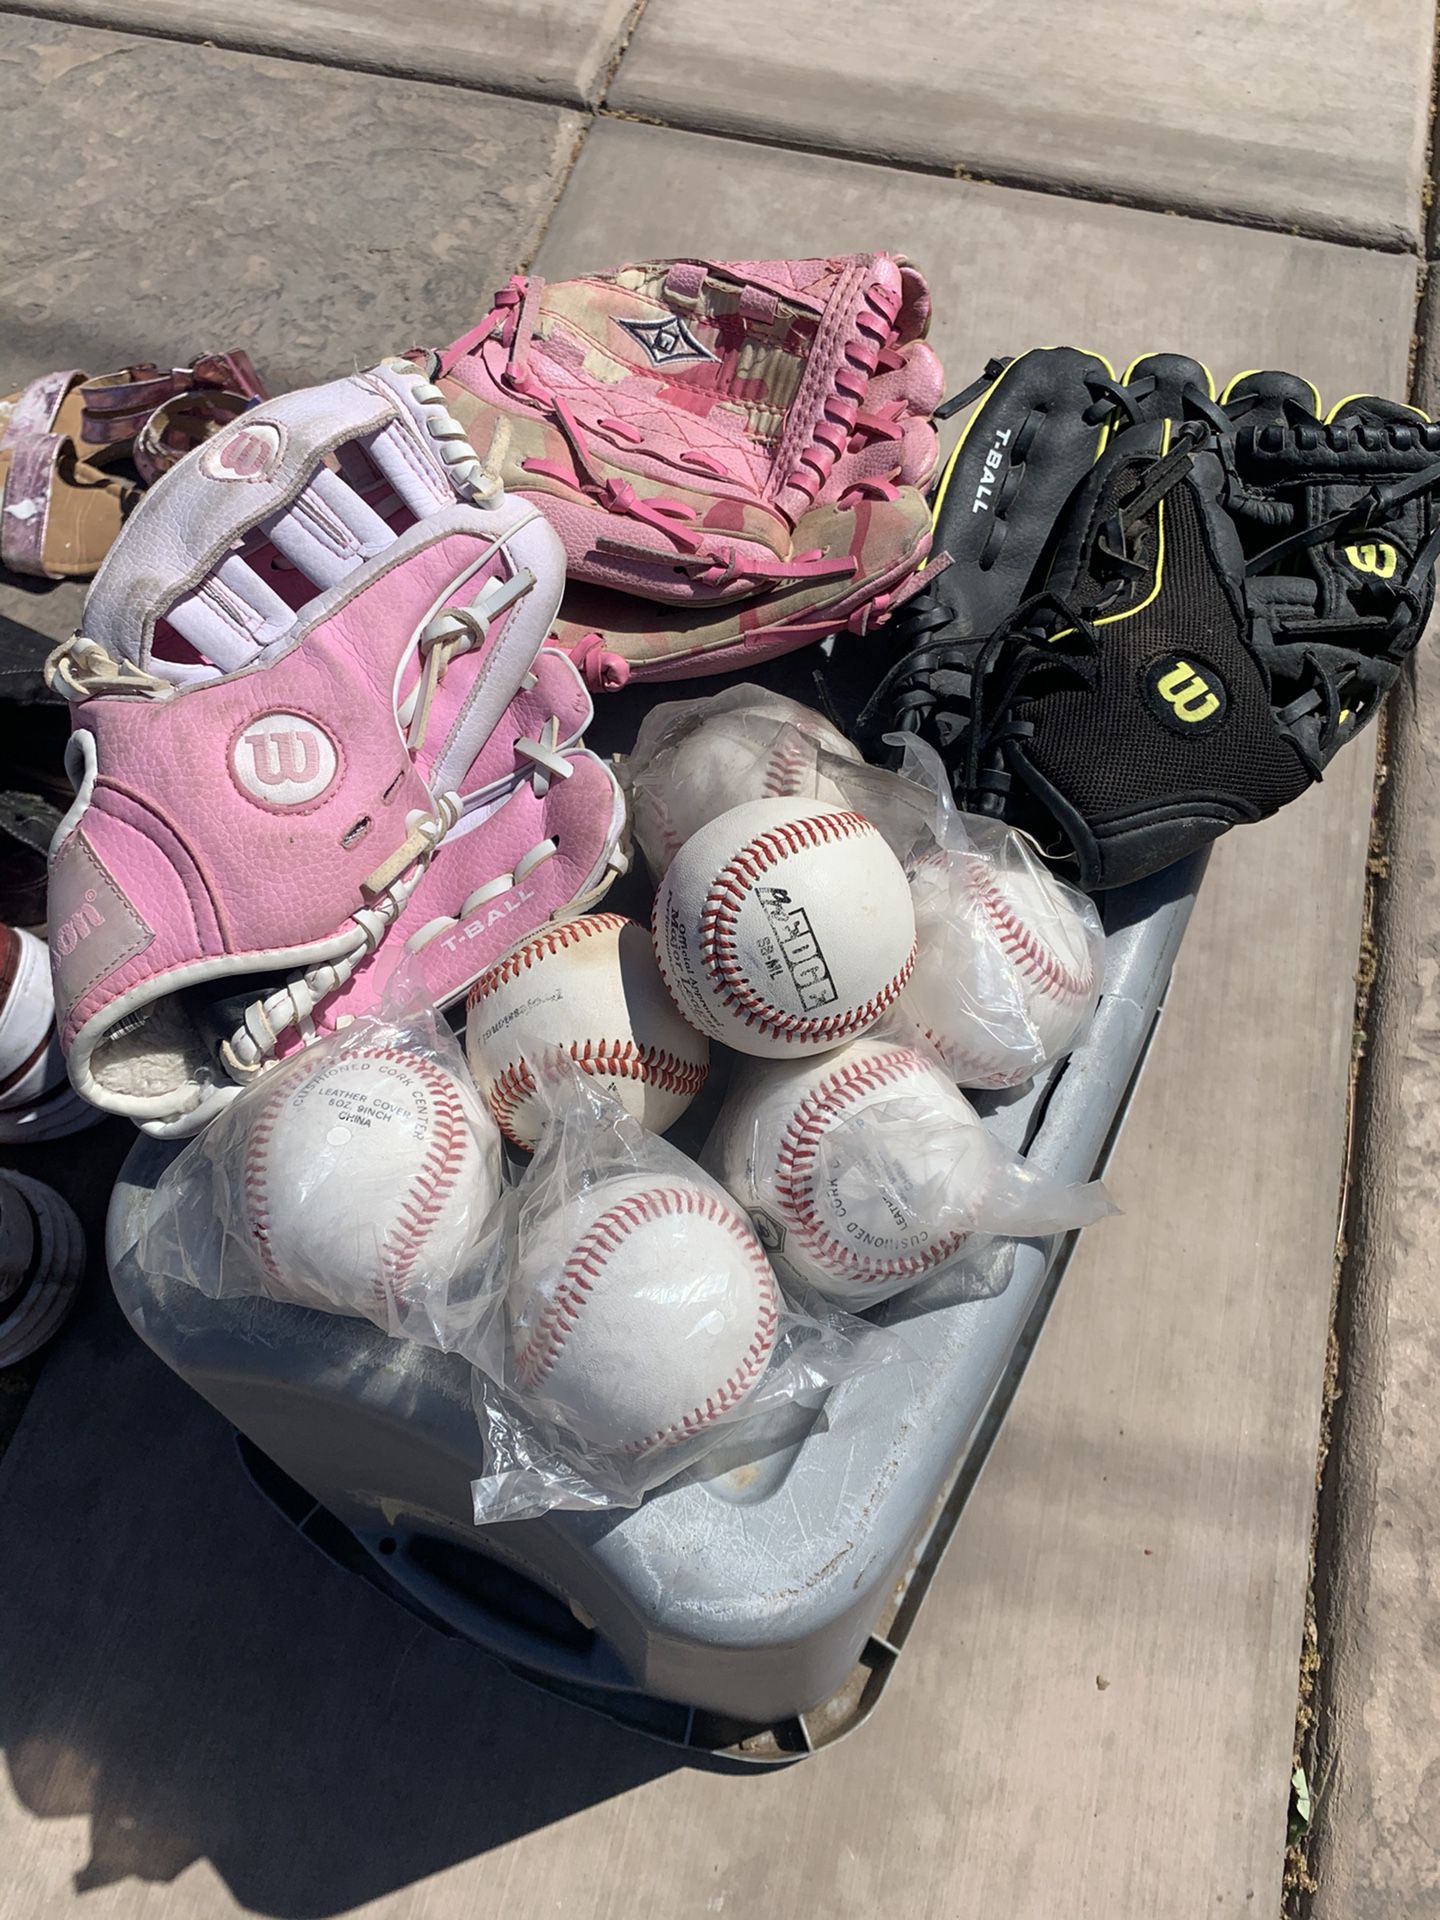 Kids Baseball Gloves And Baseballs